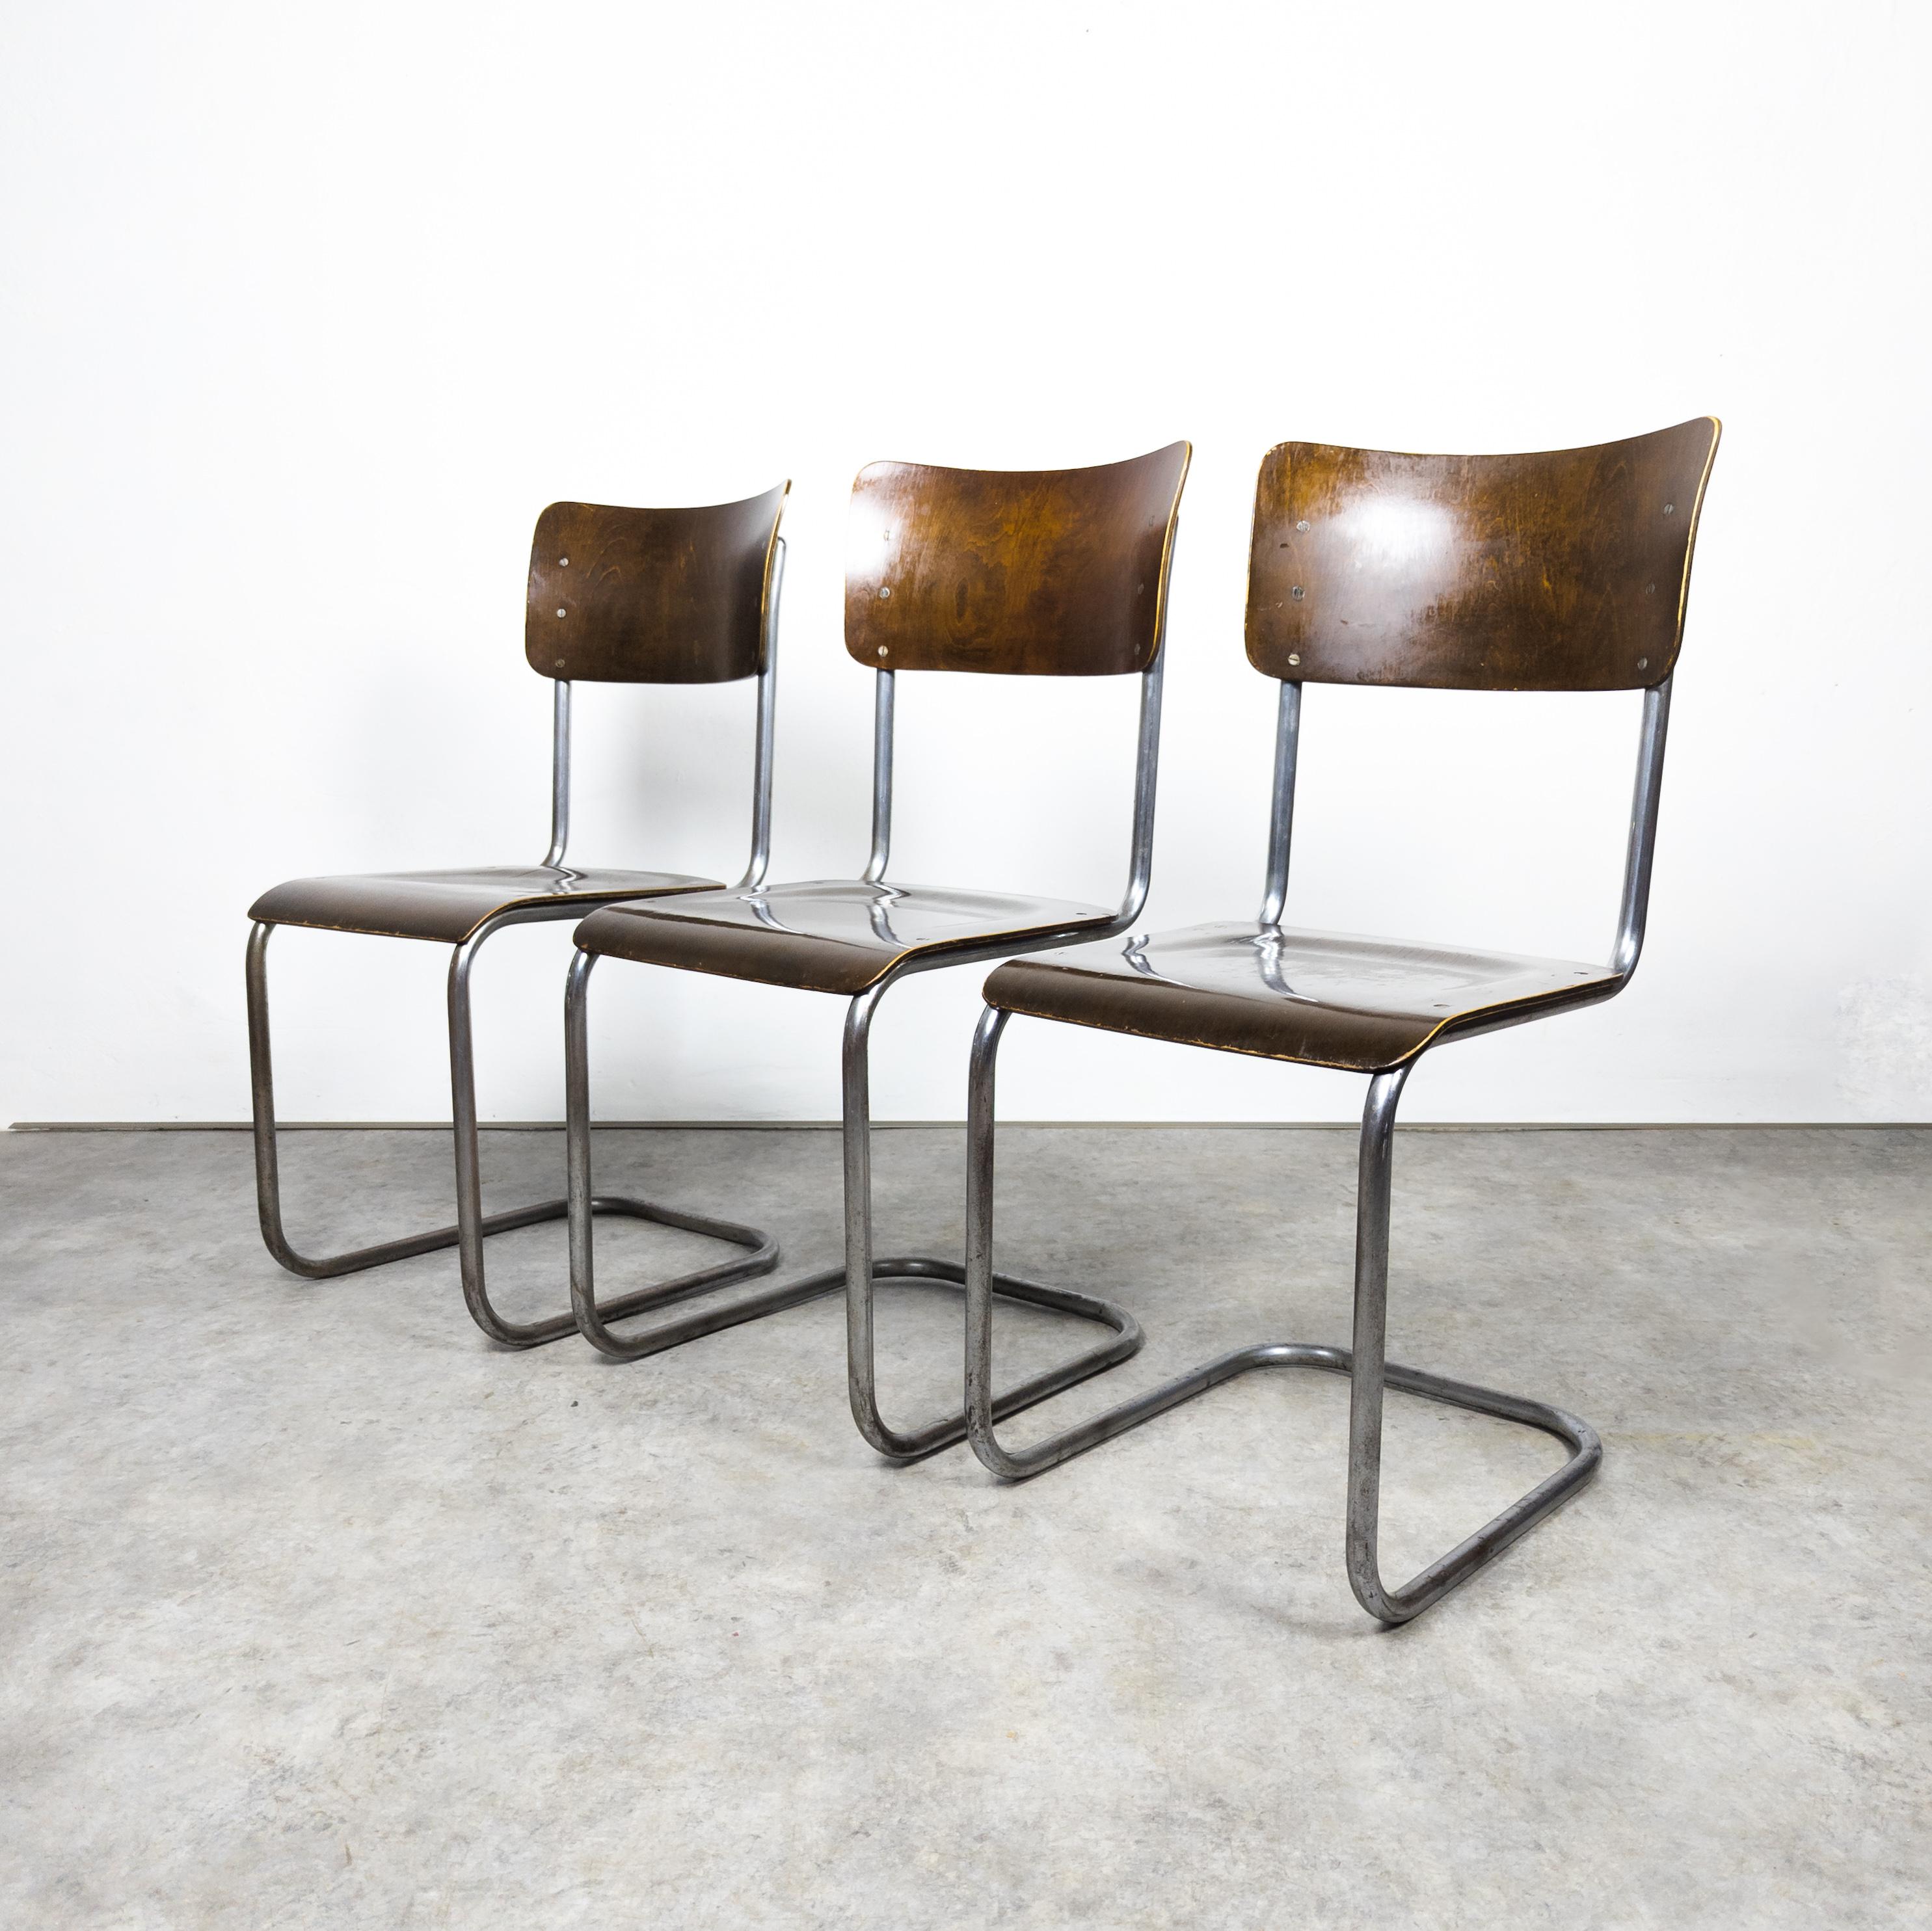 Seltene frühe Stühle, hergestellt von Vichr & co. , ehemalige Tschechoslowakei in den 1930er Jahren. Set aus drei Bauhaus-Freischwingern mit stabilem Stahlrohrgestell, die Vintage-Charme versprühen. Die Stahlelemente weisen deutliche